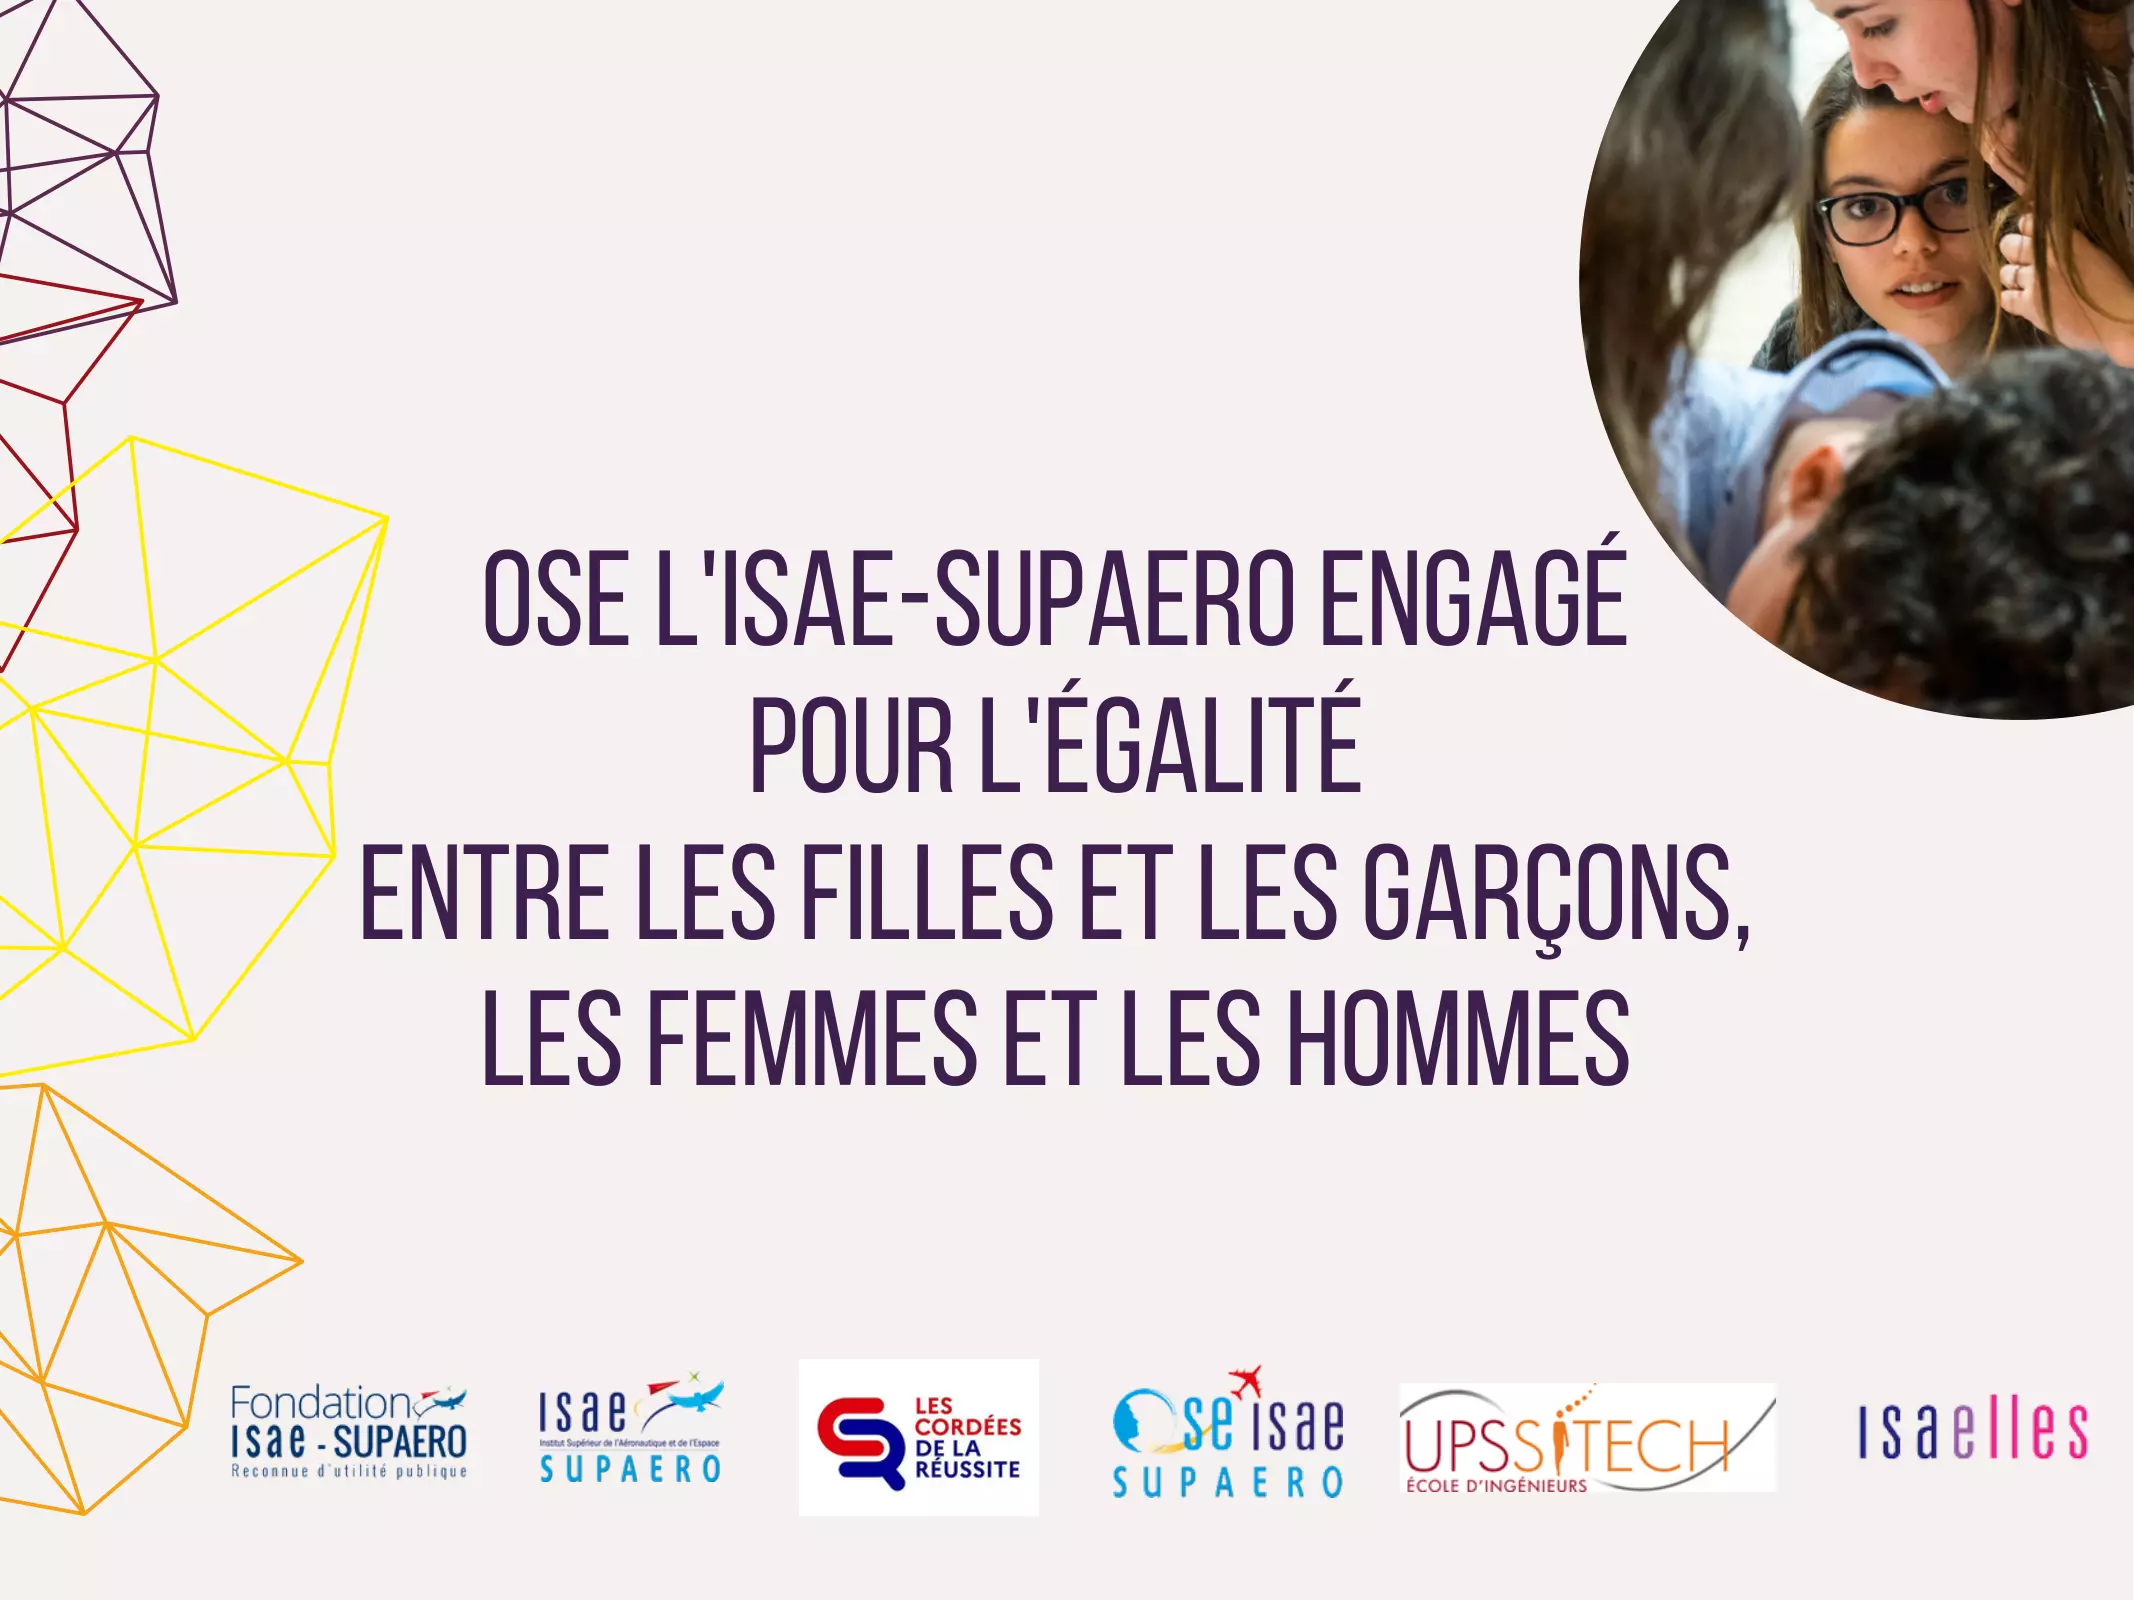 Présentation OSE l'ISAE-SUPAERO engagée pour l'égalité entre les filles et les garçons, les femmes et les hommes(1)-01